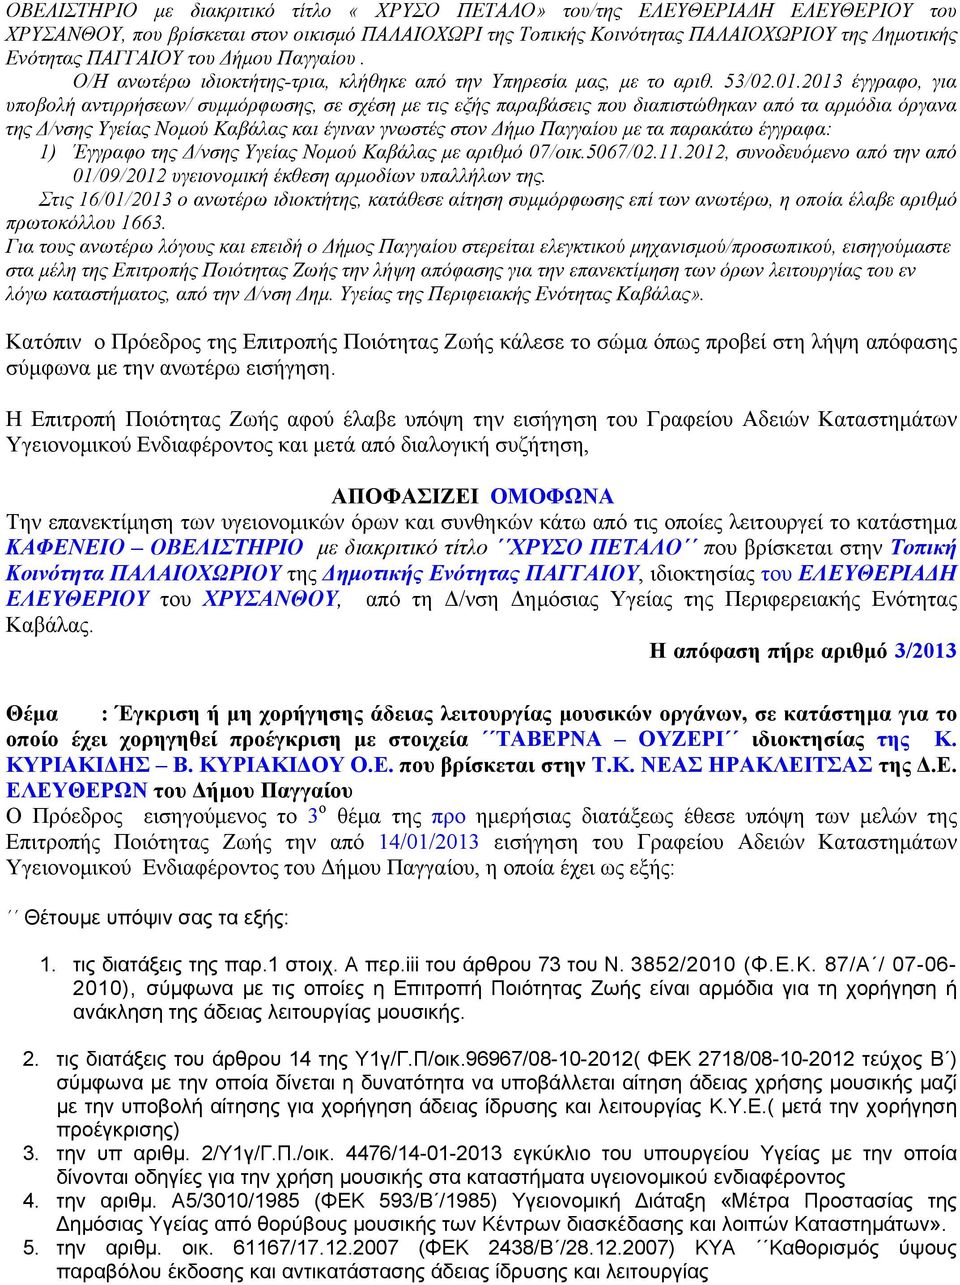 2013 έγγραφο, για υποβολή αντιρρήσεων/ συμμόρφωσης, σε σχέση με τις εξής παραβάσεις που διαπιστώθηκαν από τα αρμόδια όργανα της Δ/νσης Υγείας Νομού Καβάλας και έγιναν γνωστές στον Δήμο Παγγαίου με τα